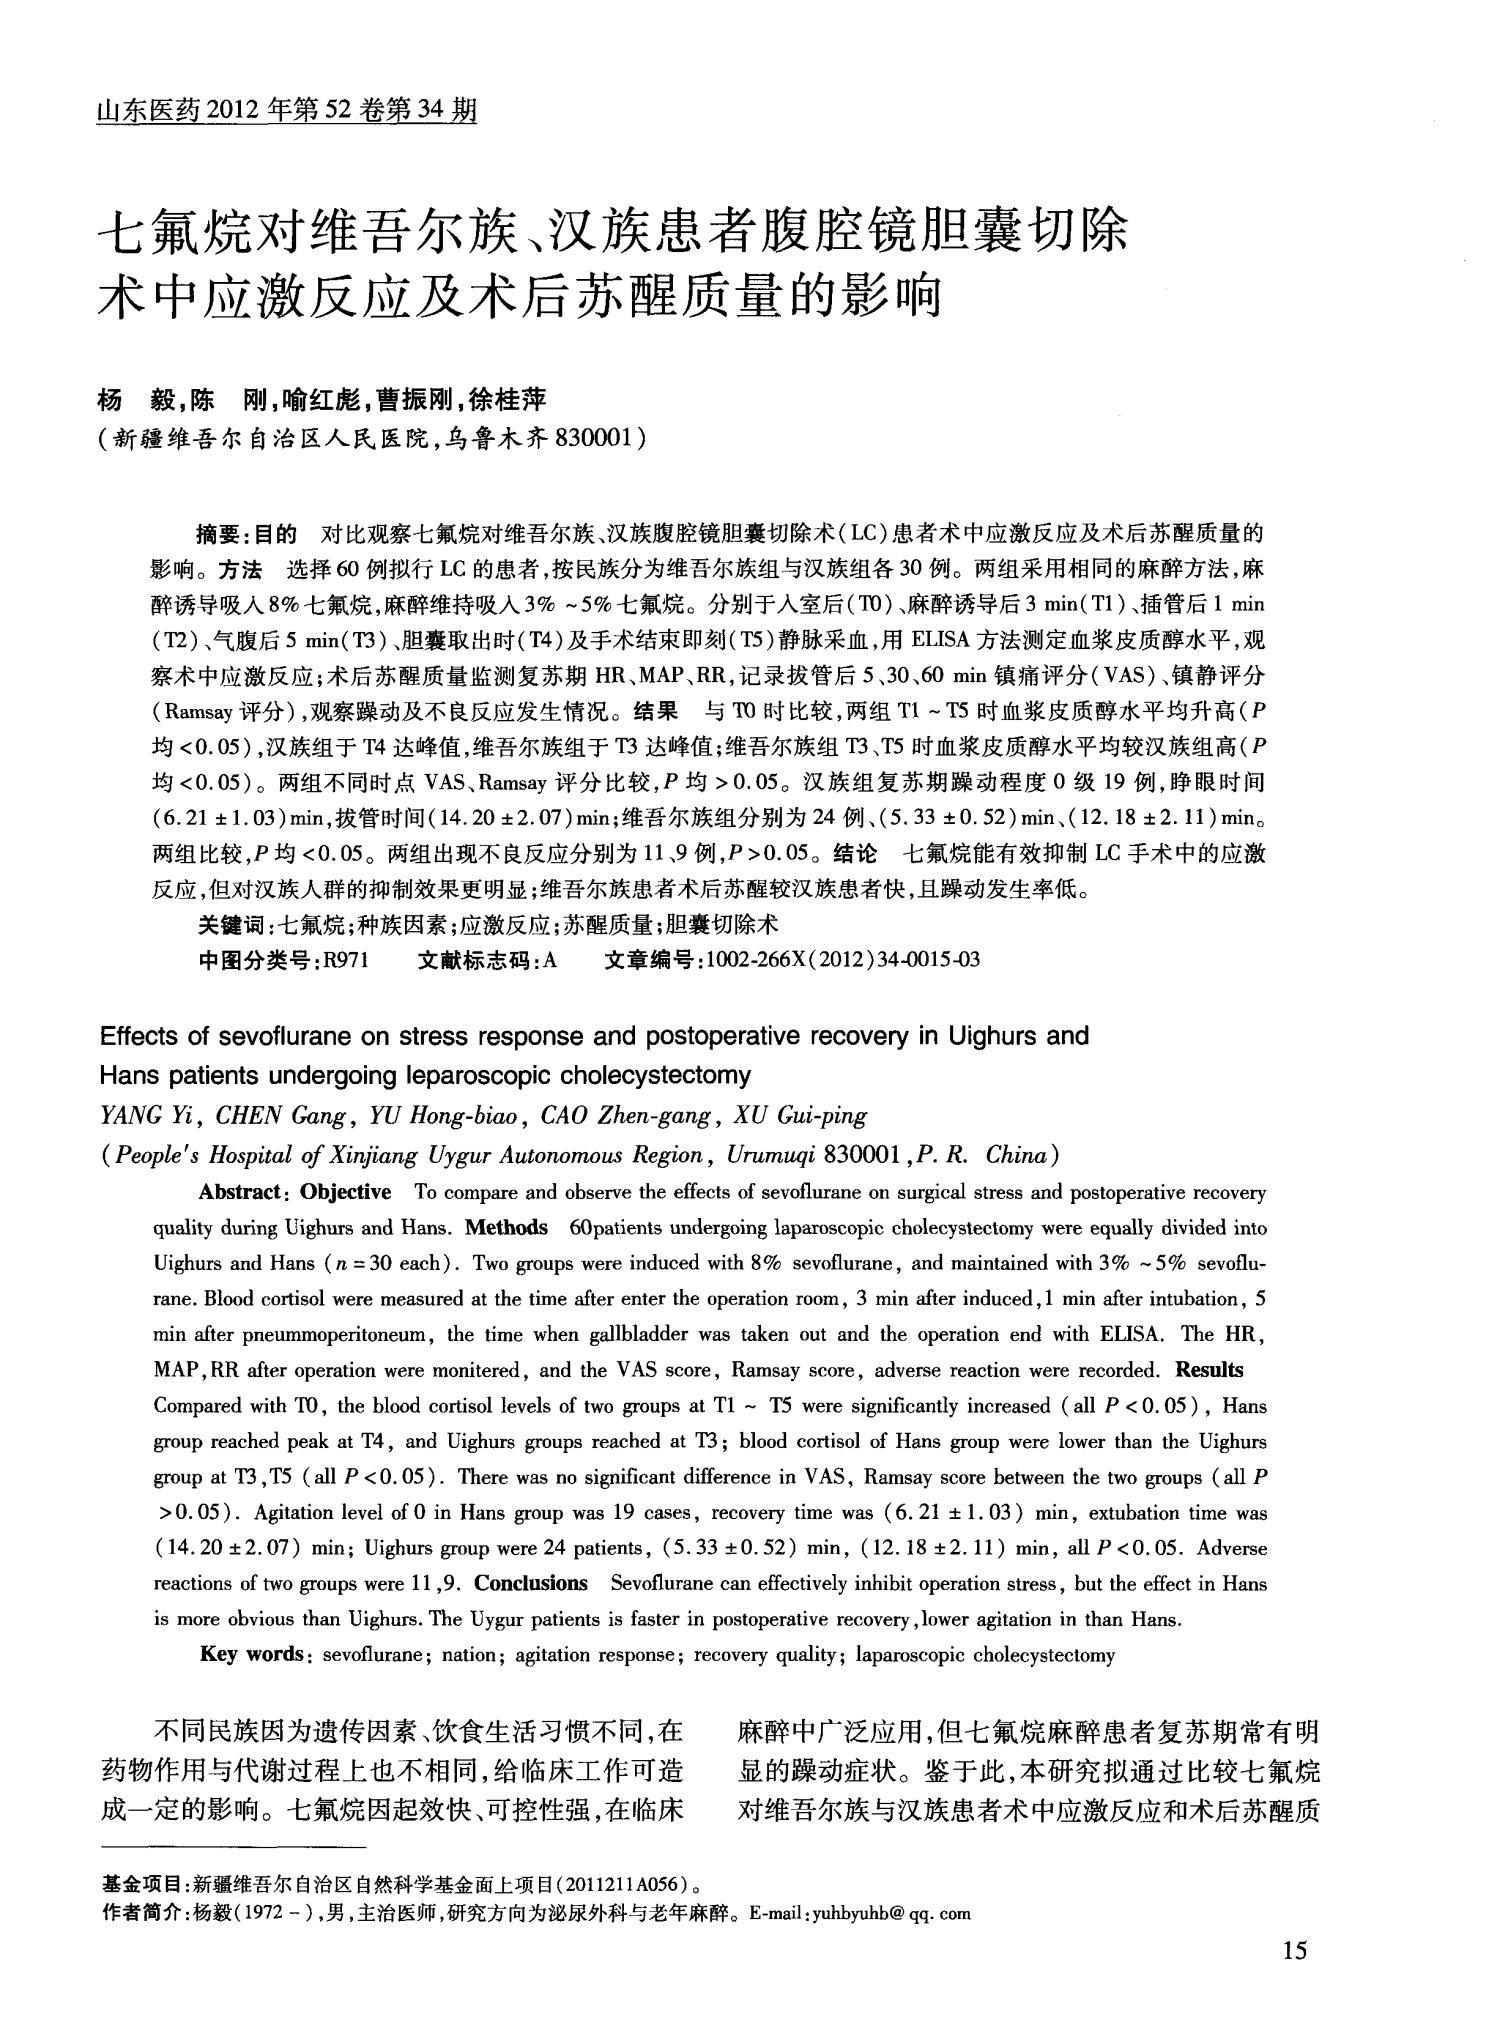 七氟烷对维吾尔族、汉族患者腹腔镜胆囊切除术中应激反应及术后苏醒质量的影响